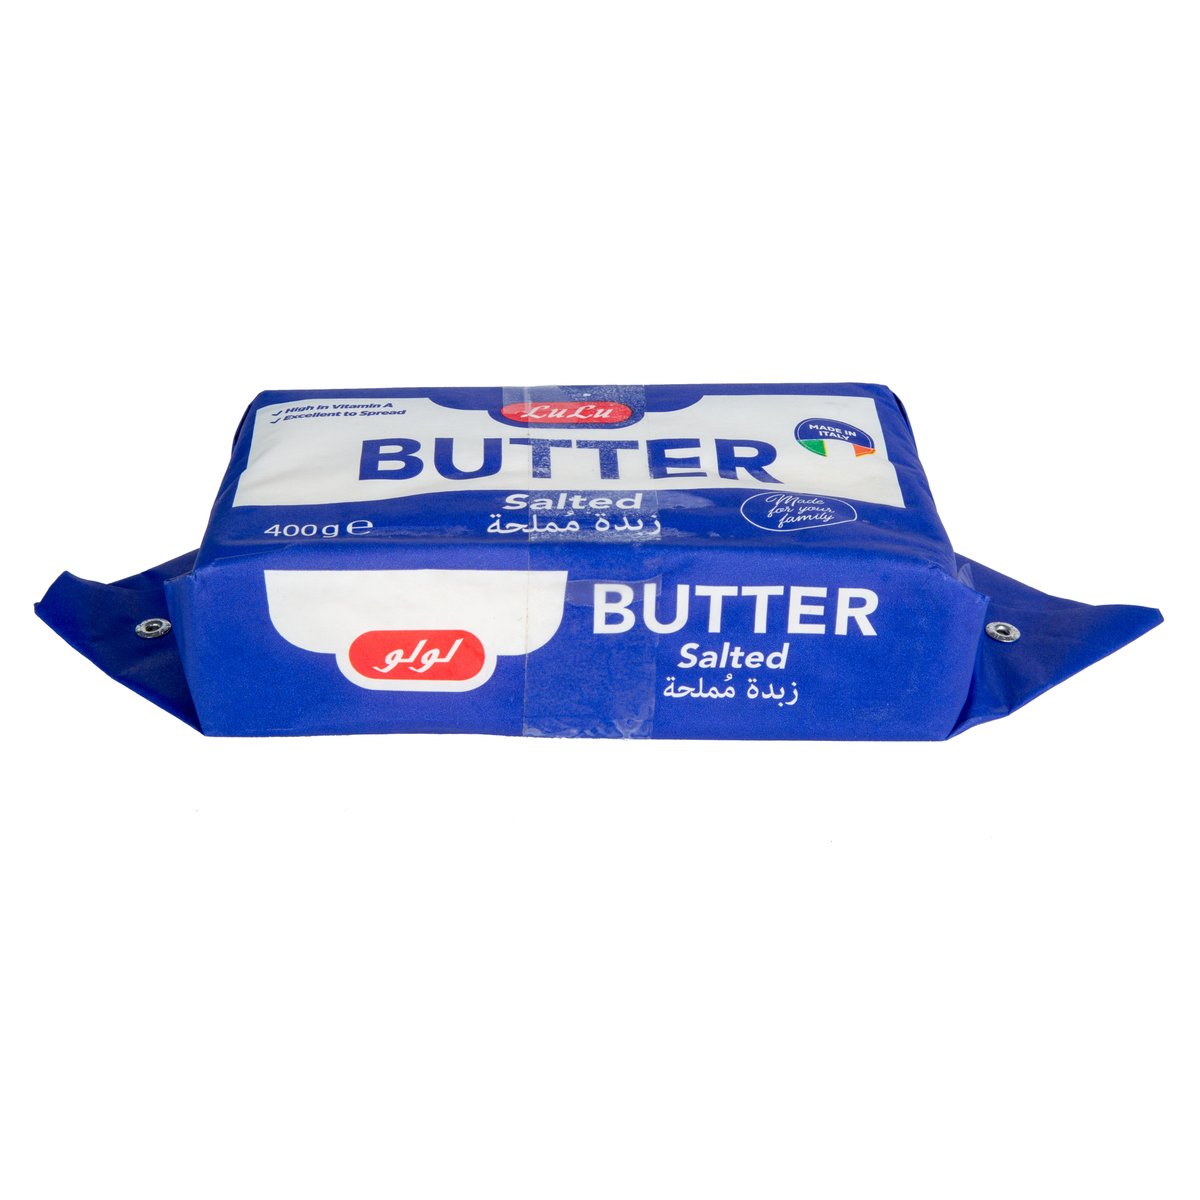 LuLu Butter Salted 400 g